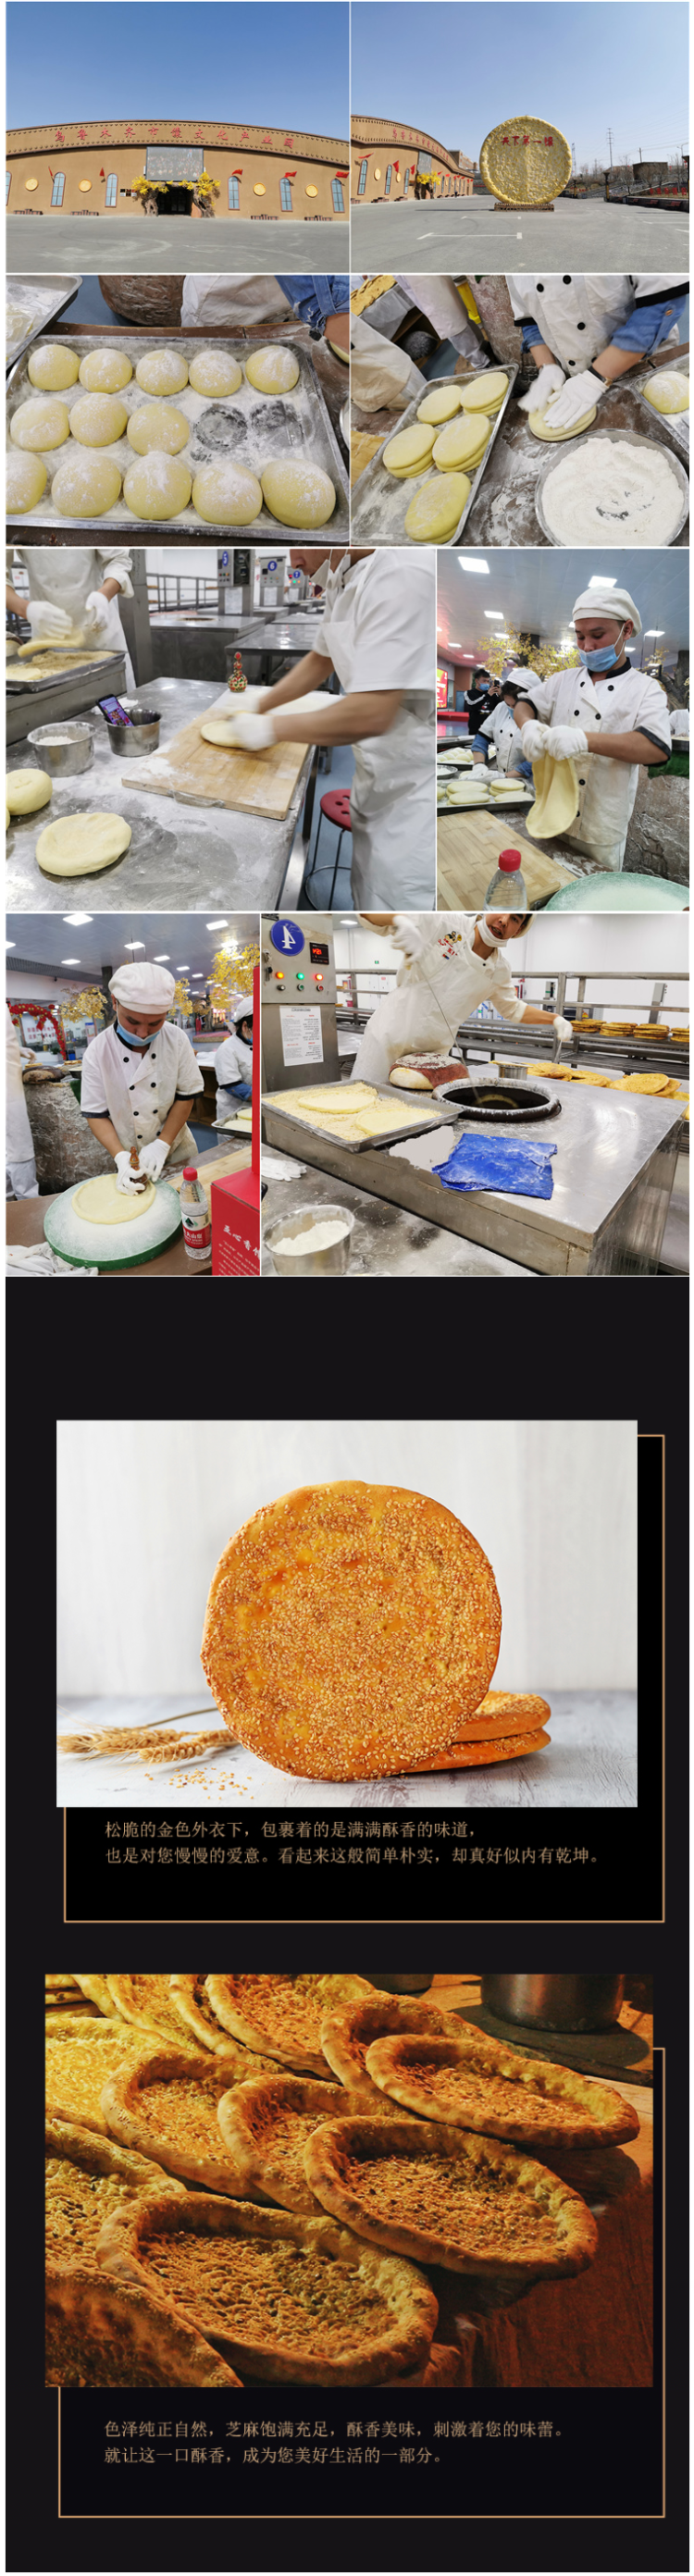 新疆传统手工美食 芝麻油酥馕/皮牙子油酥馕 300g*3包 图3